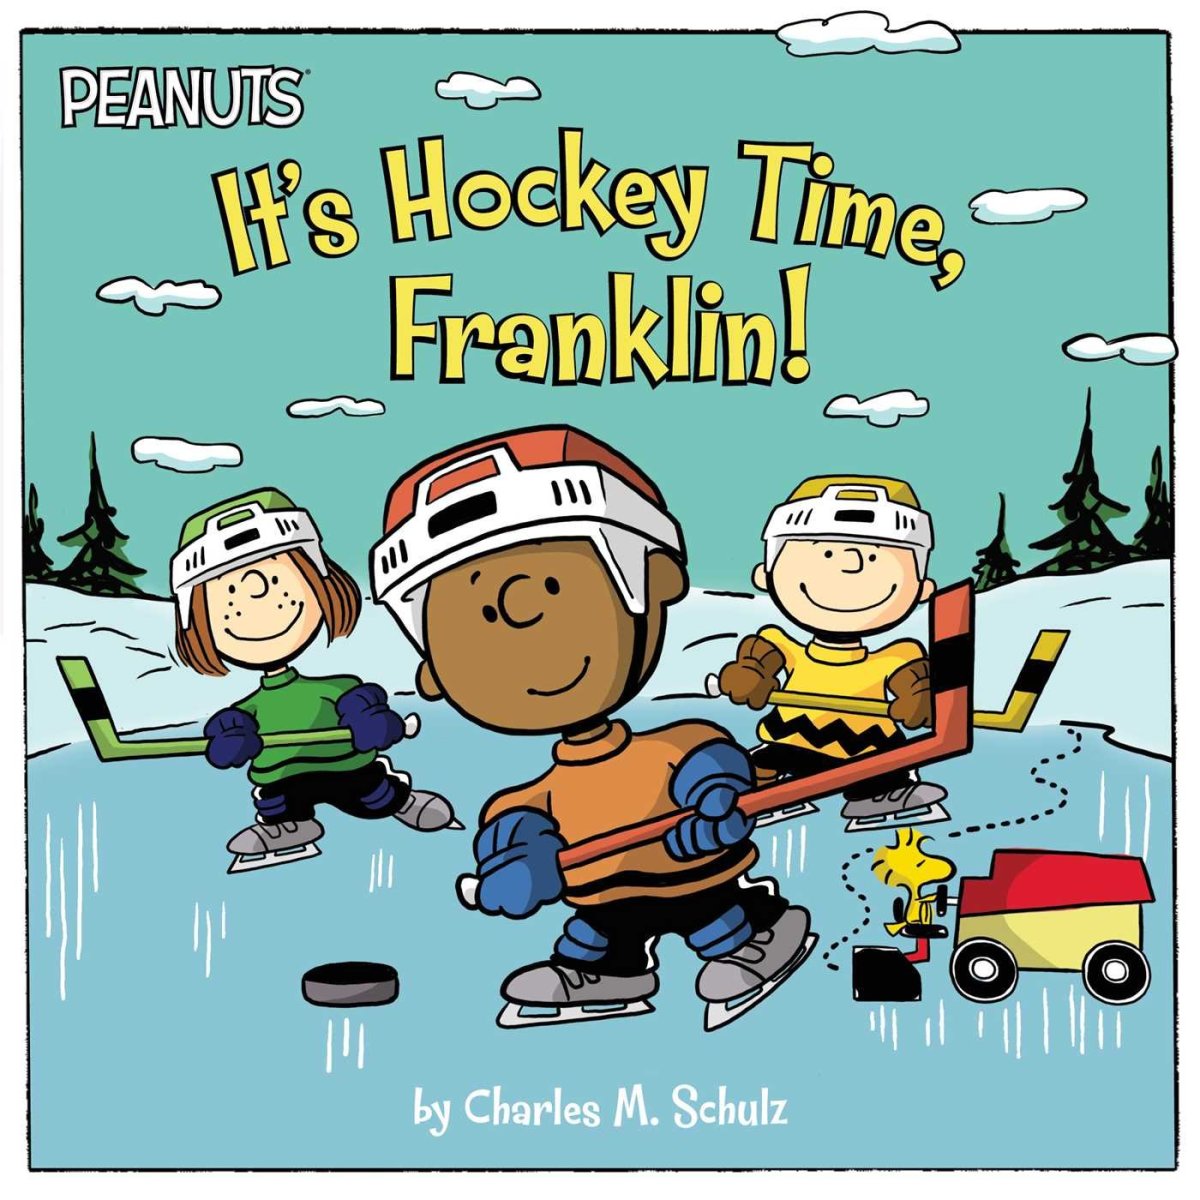 Peanuts Hockey